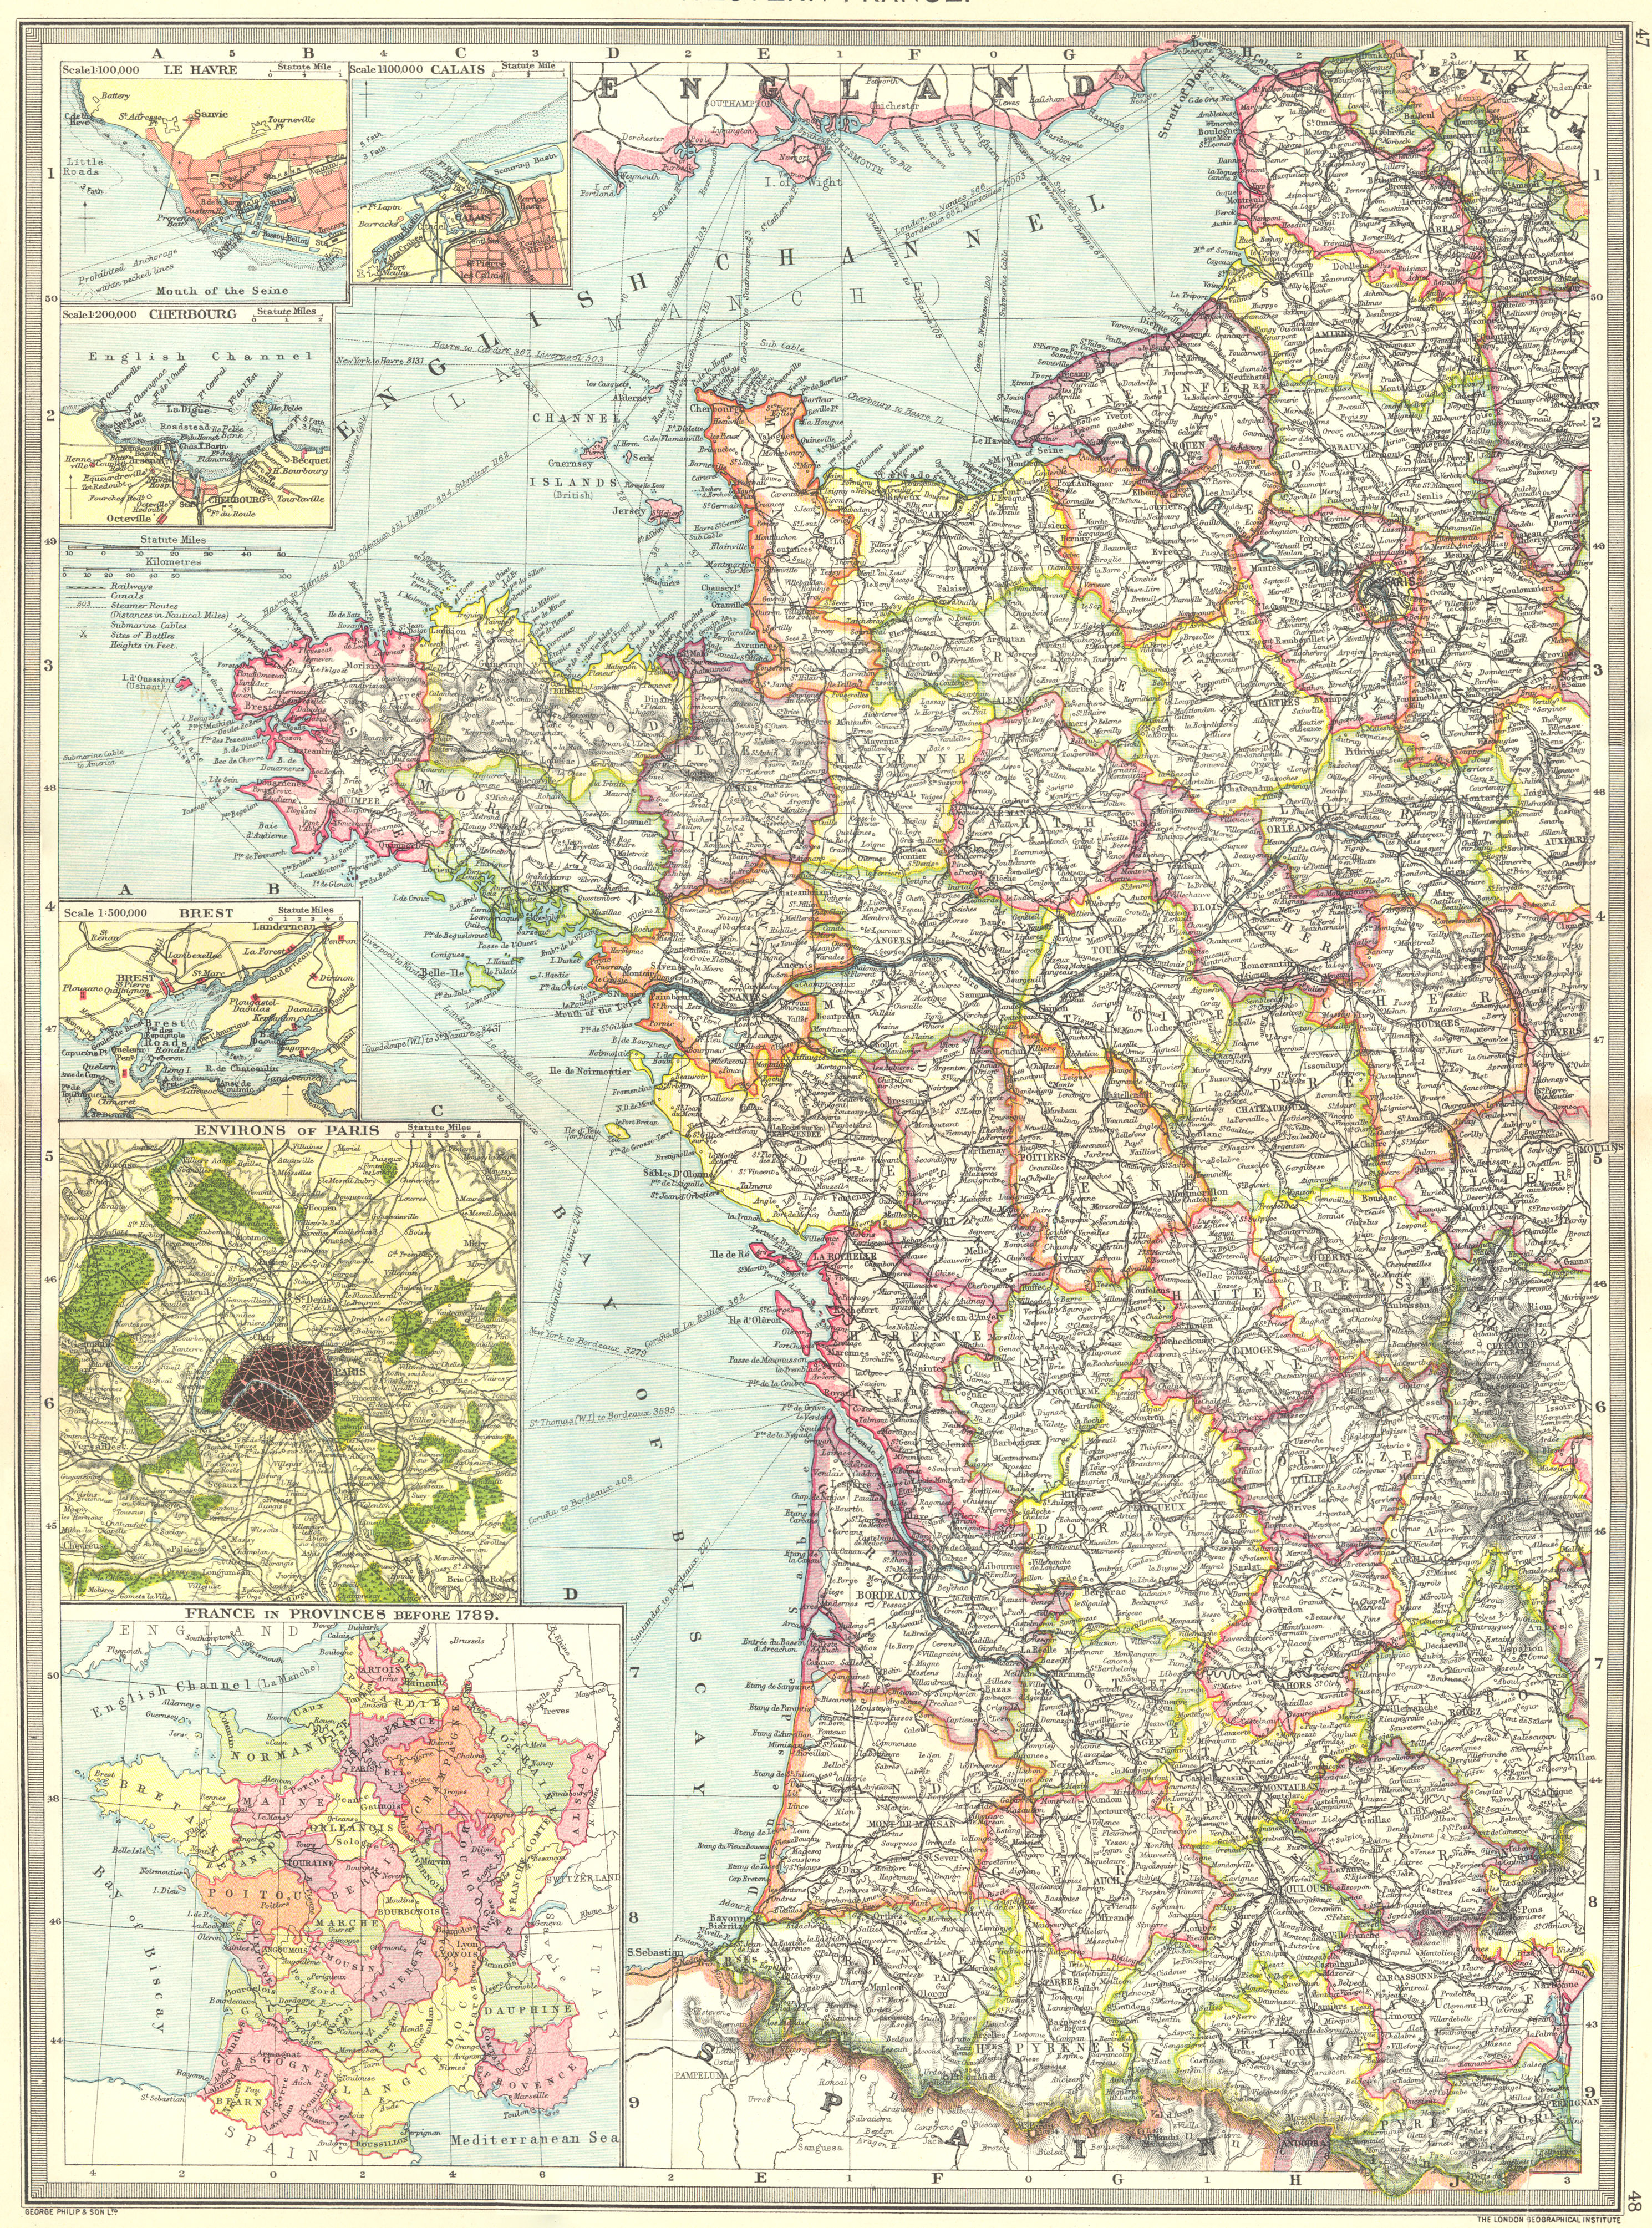 Associate Product WEST FRANCE. Le Havre Calais Cherbourg Brest Paris provinces 1789 1907 old map